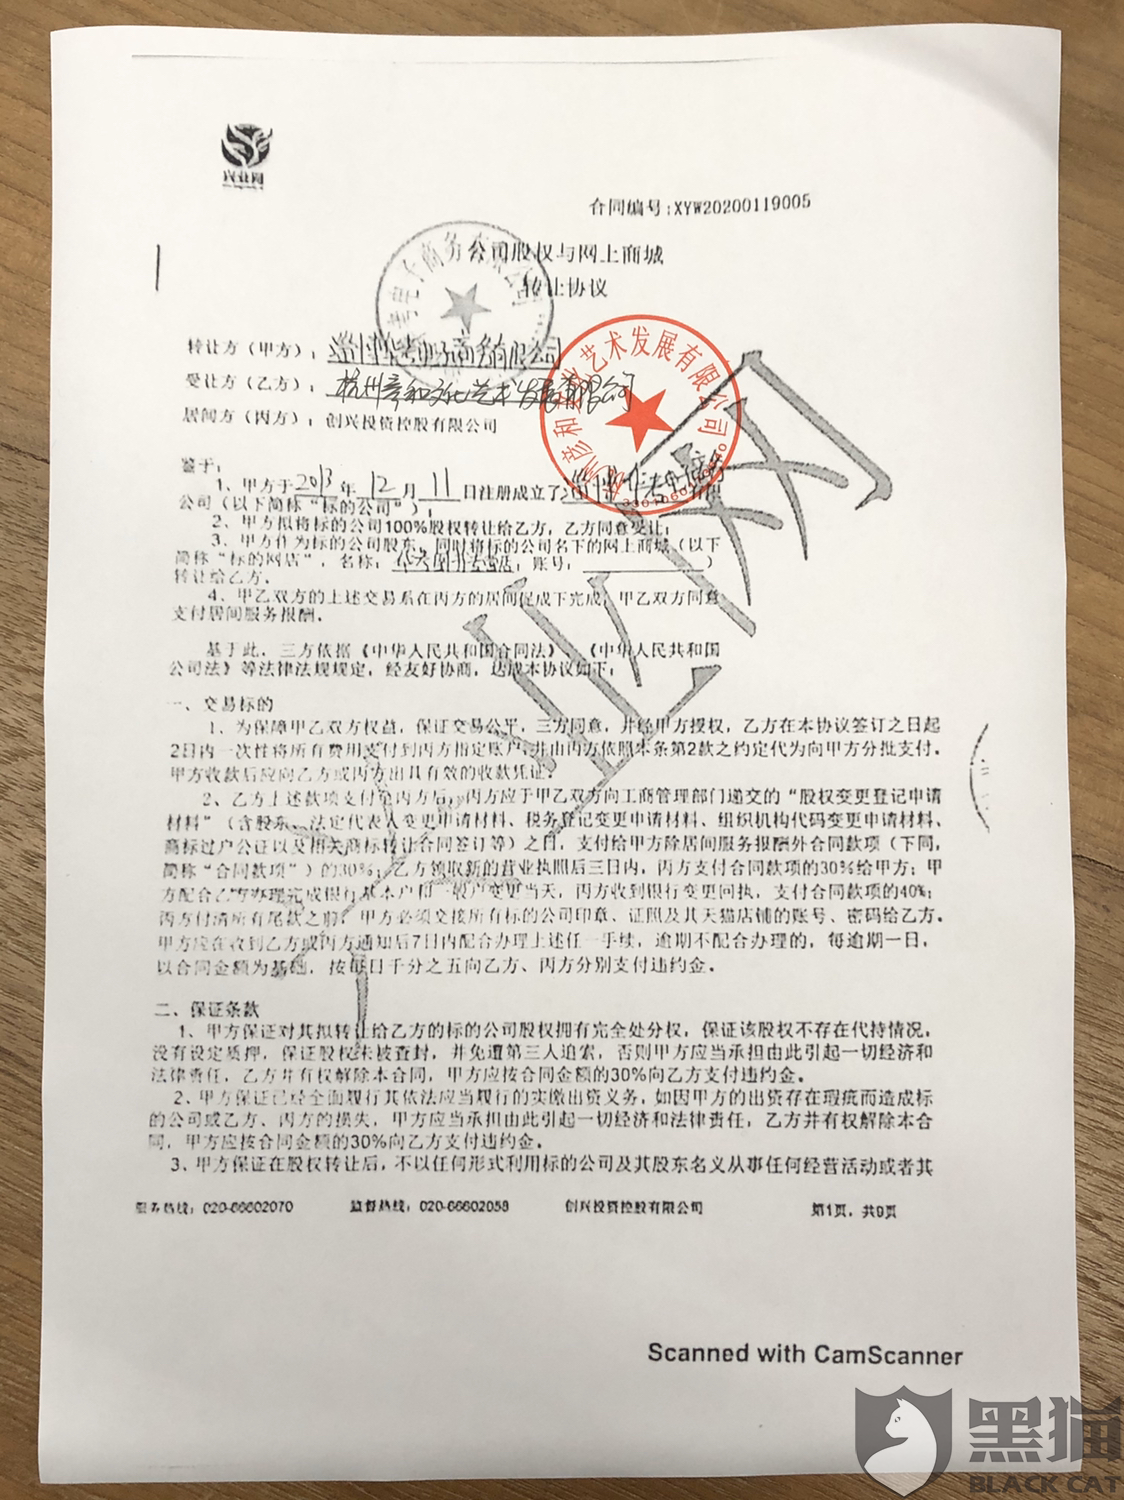 黑猫投诉:广州兴业网天猫店铺转让协议,未按合同付尾款